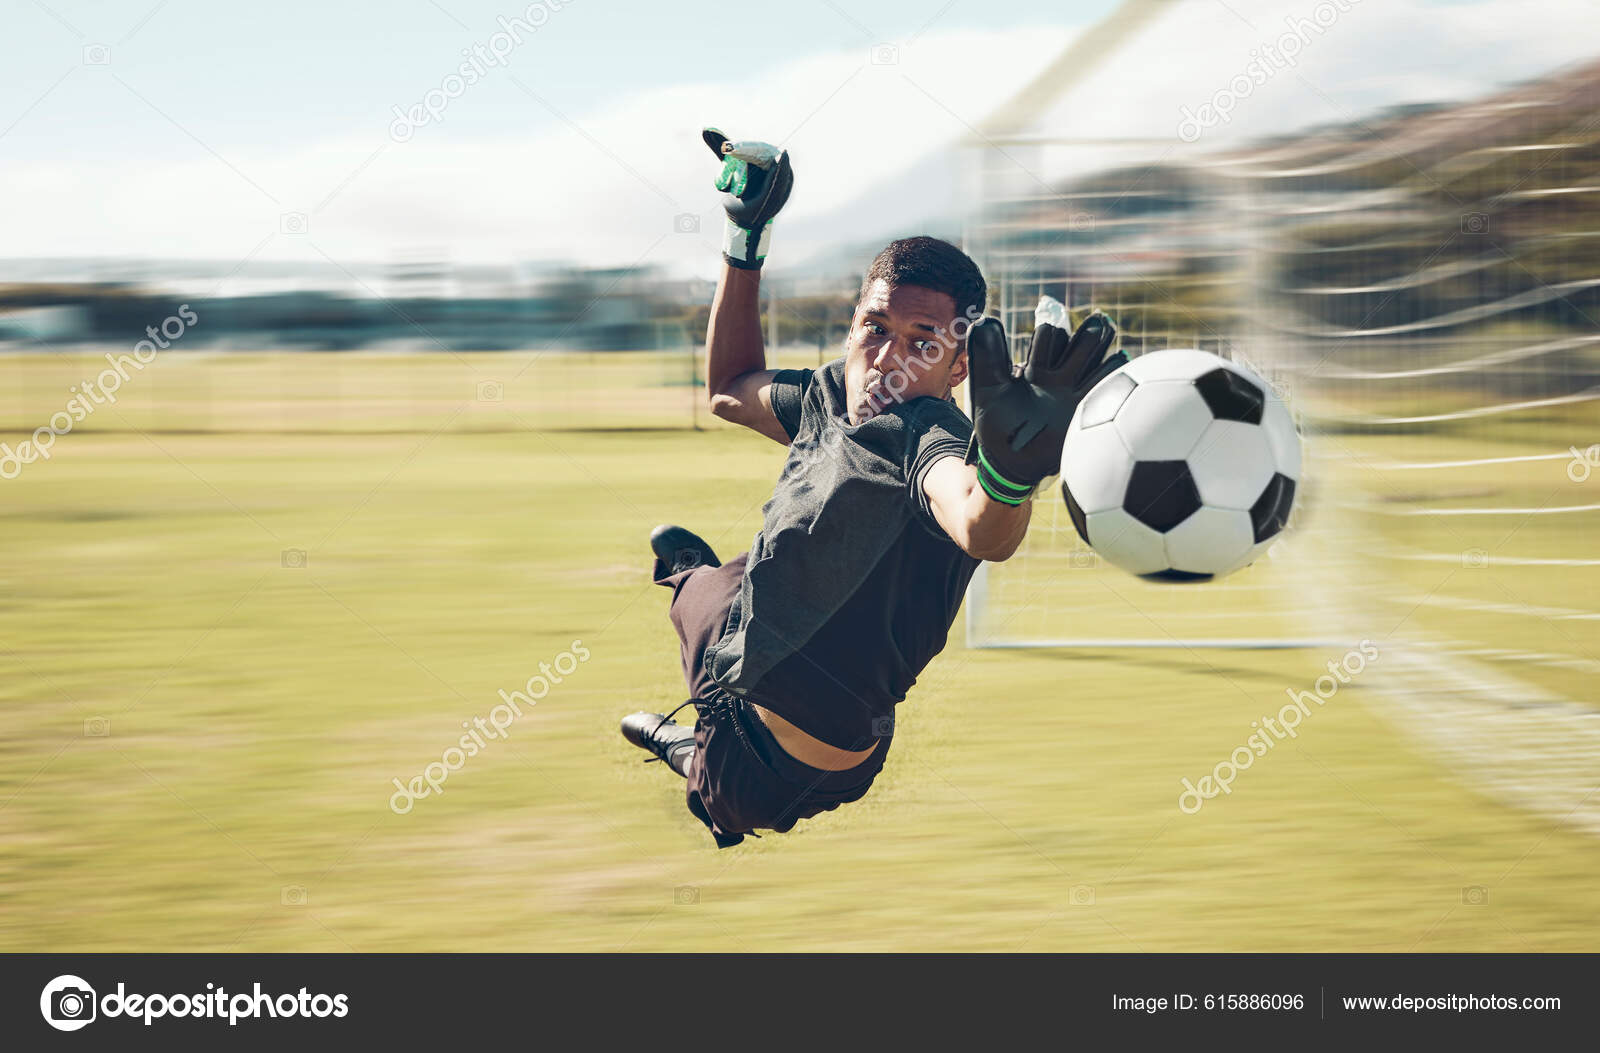 Futebol, jogo de futebol. Um jogador atirando no gol realizando um